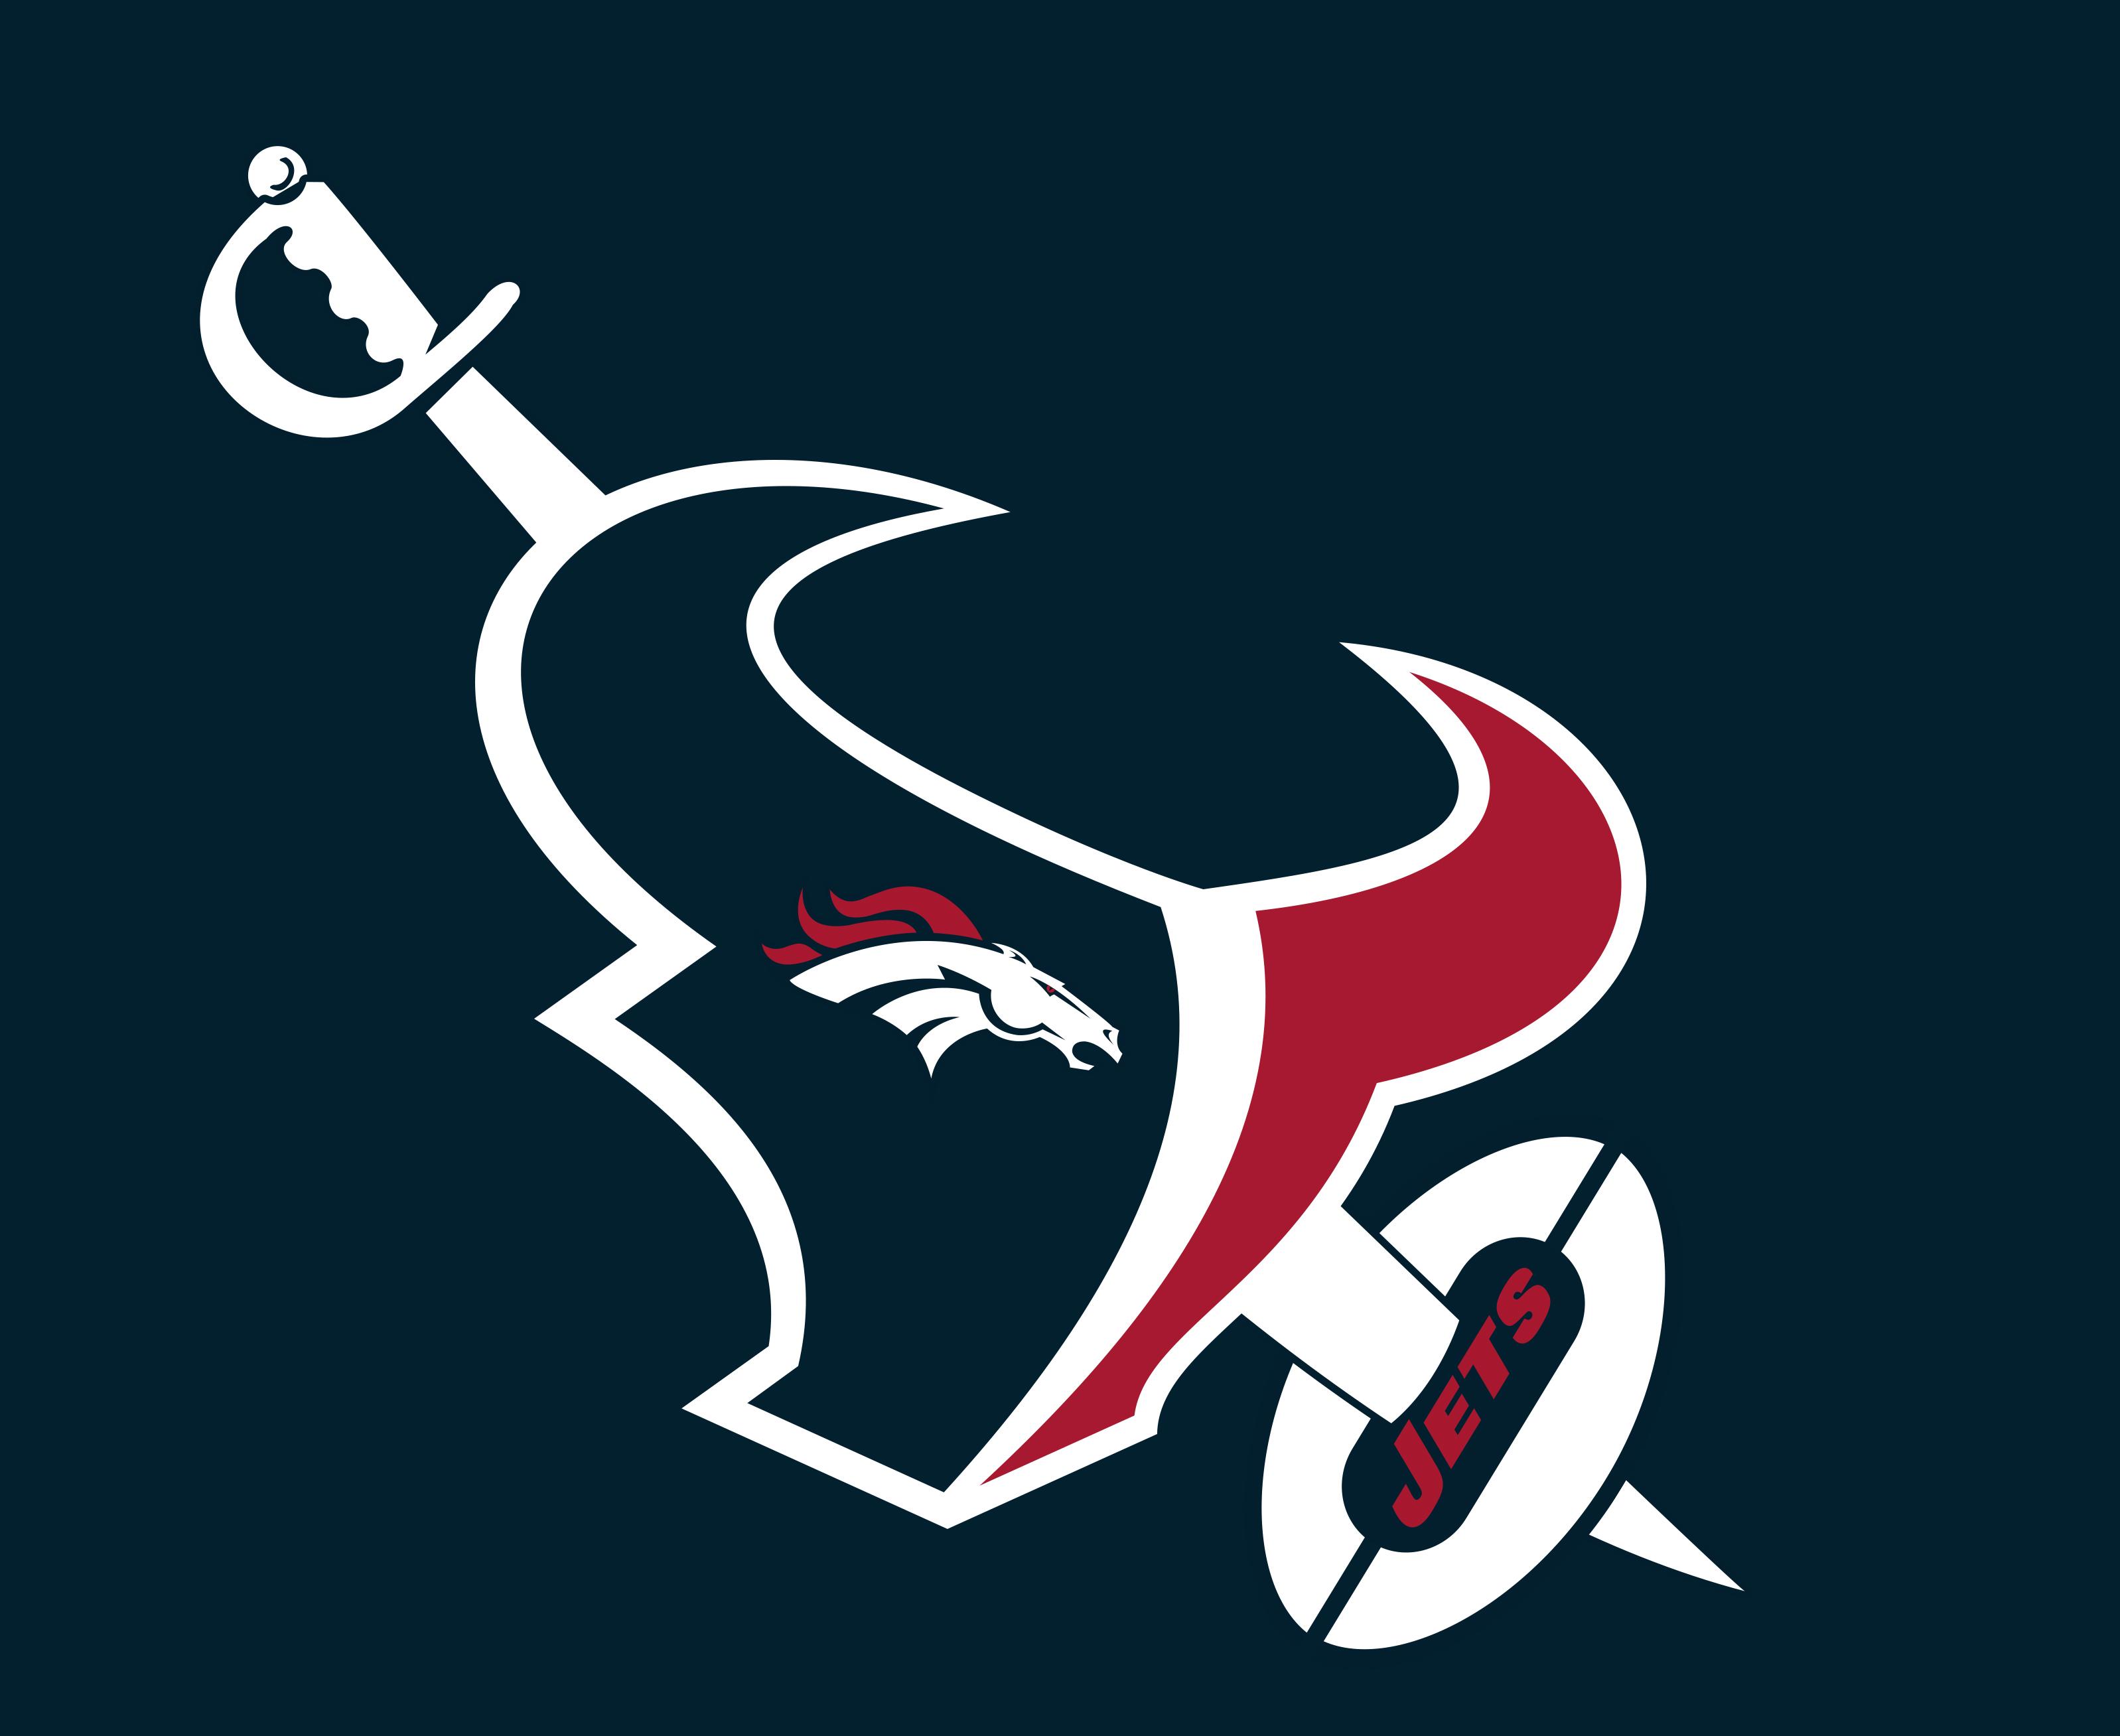 Texasn Logo - Houston Texans unveil new logo for the last game of the season [OC ...